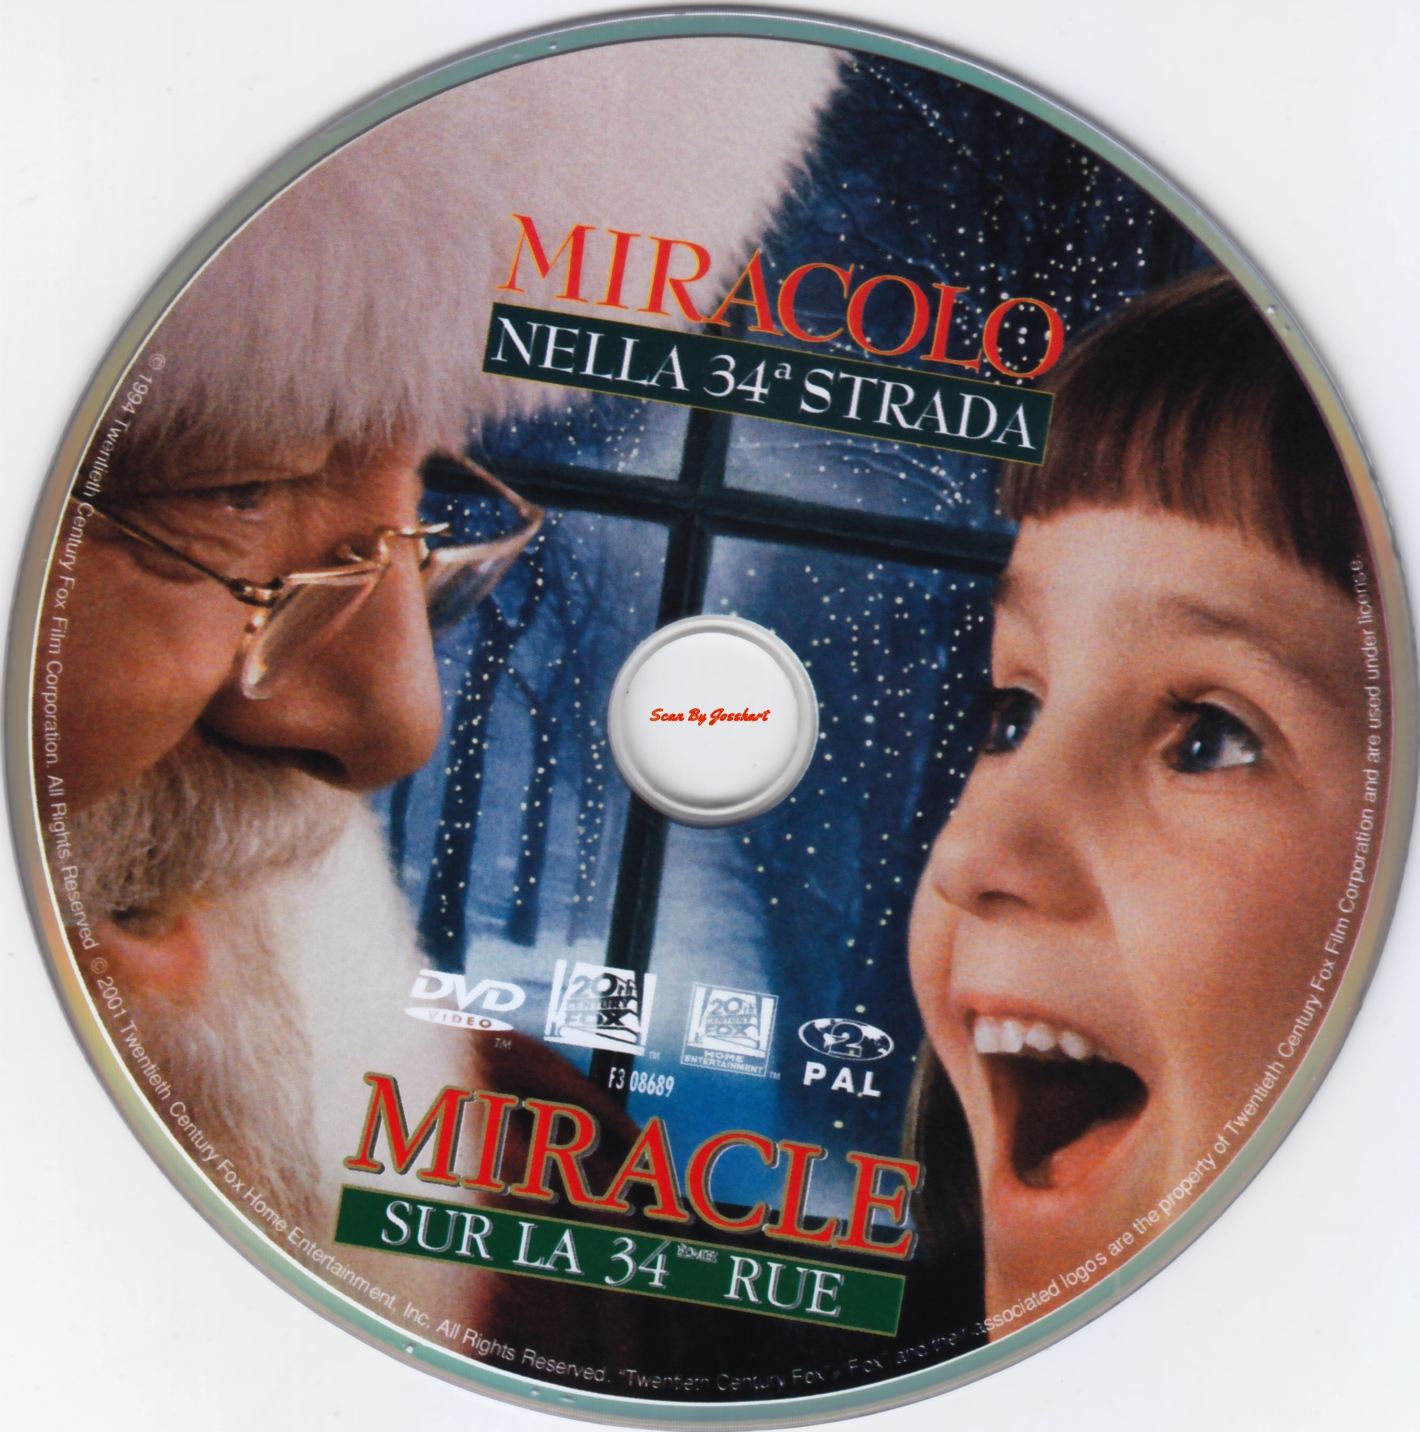 Miracle sur la 34 eme rue (1994)